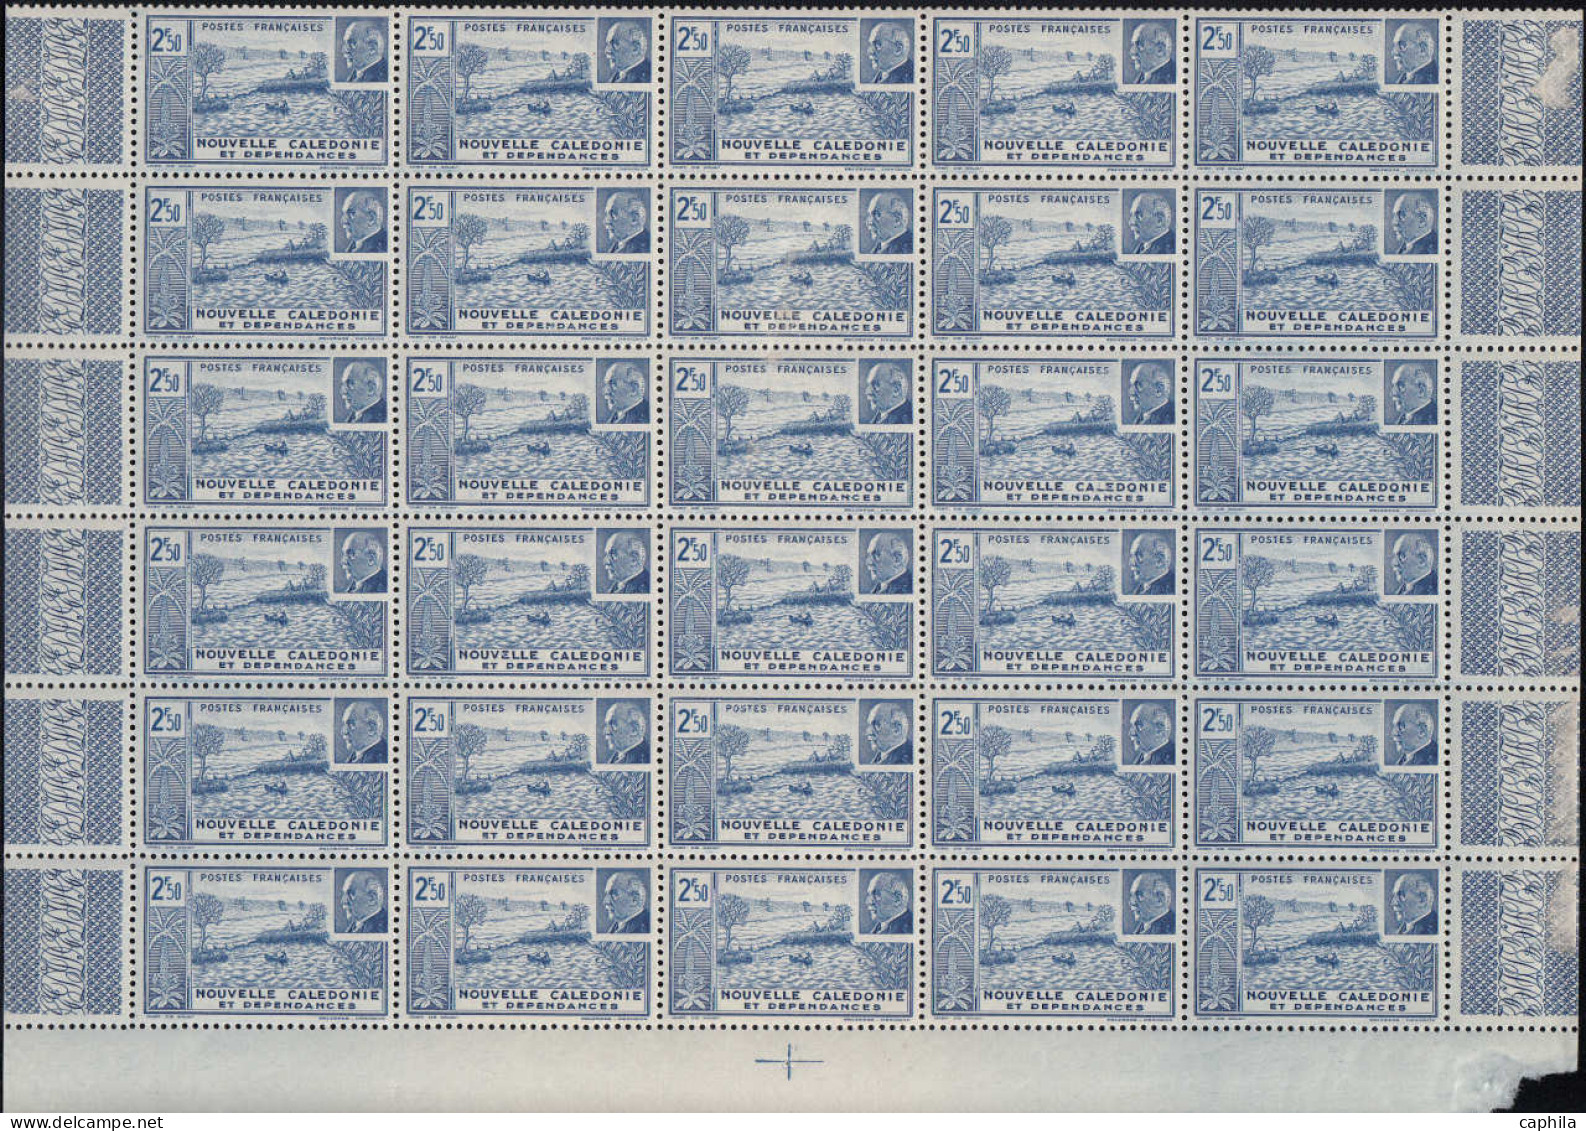 ** COLONIES SERIES - Poste - 1944, Pétain en panneaux de 30 (sauf AEF - Madagascar - Océanie) souvent 2 valeurs par bloc